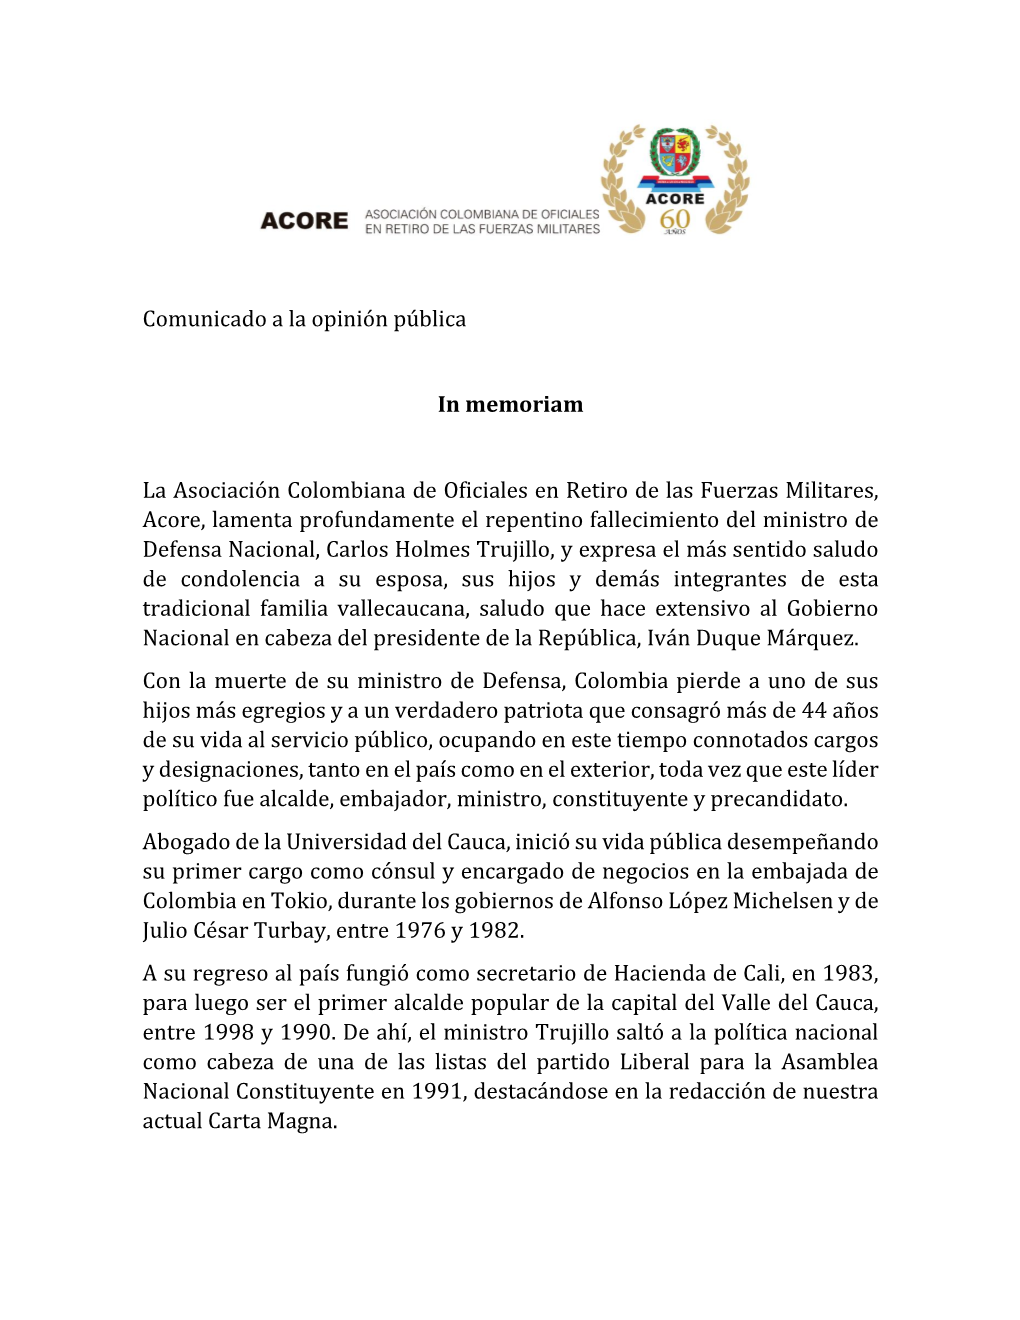 Comunicado a La Opinión Pública in Memoriam La Asociación Colombiana De Oficiales En Retiro De Las Fuerzas Militares, Acore